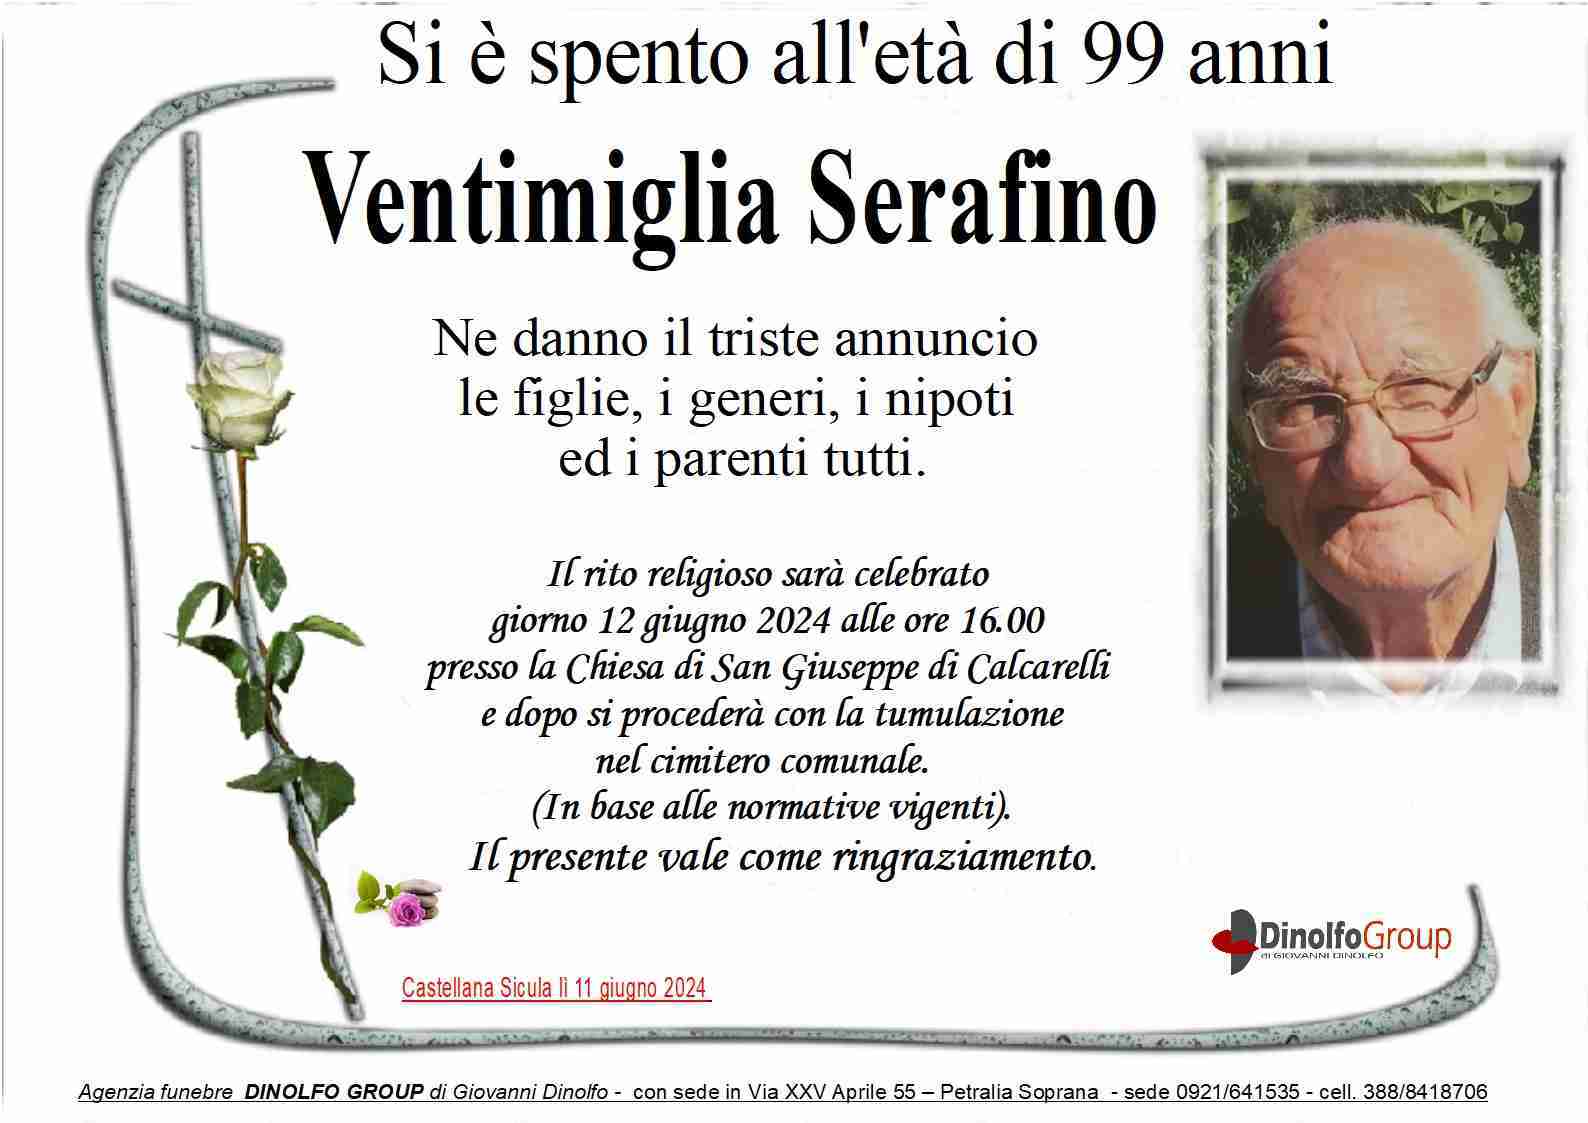 Serafino Ventimiglia